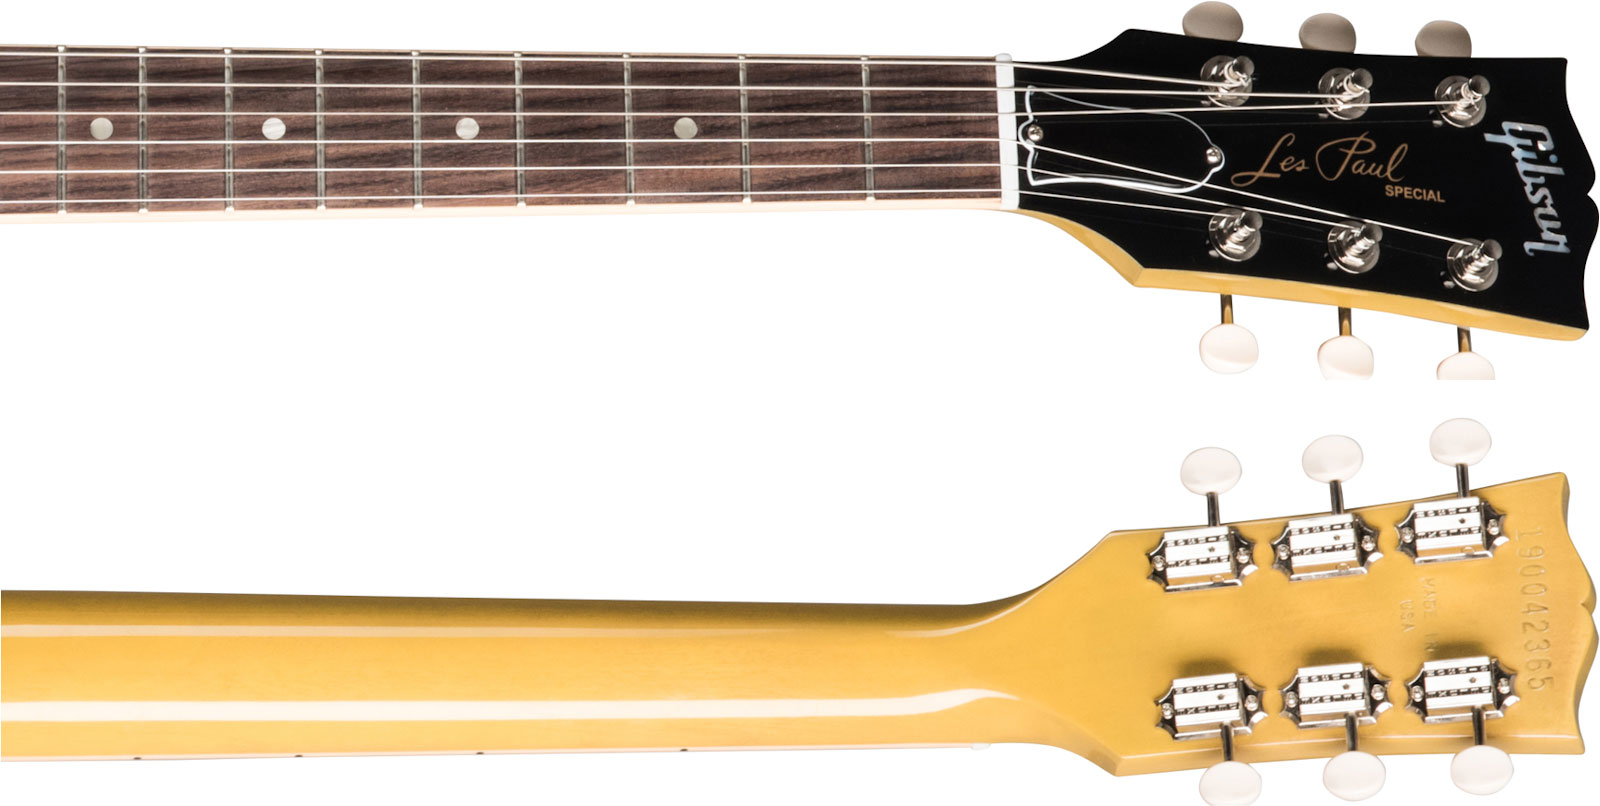 Gibson Les Paul Special Original 2p90 Ht Rw - Tv Yellow - Guitare Électrique Single Cut - Variation 3